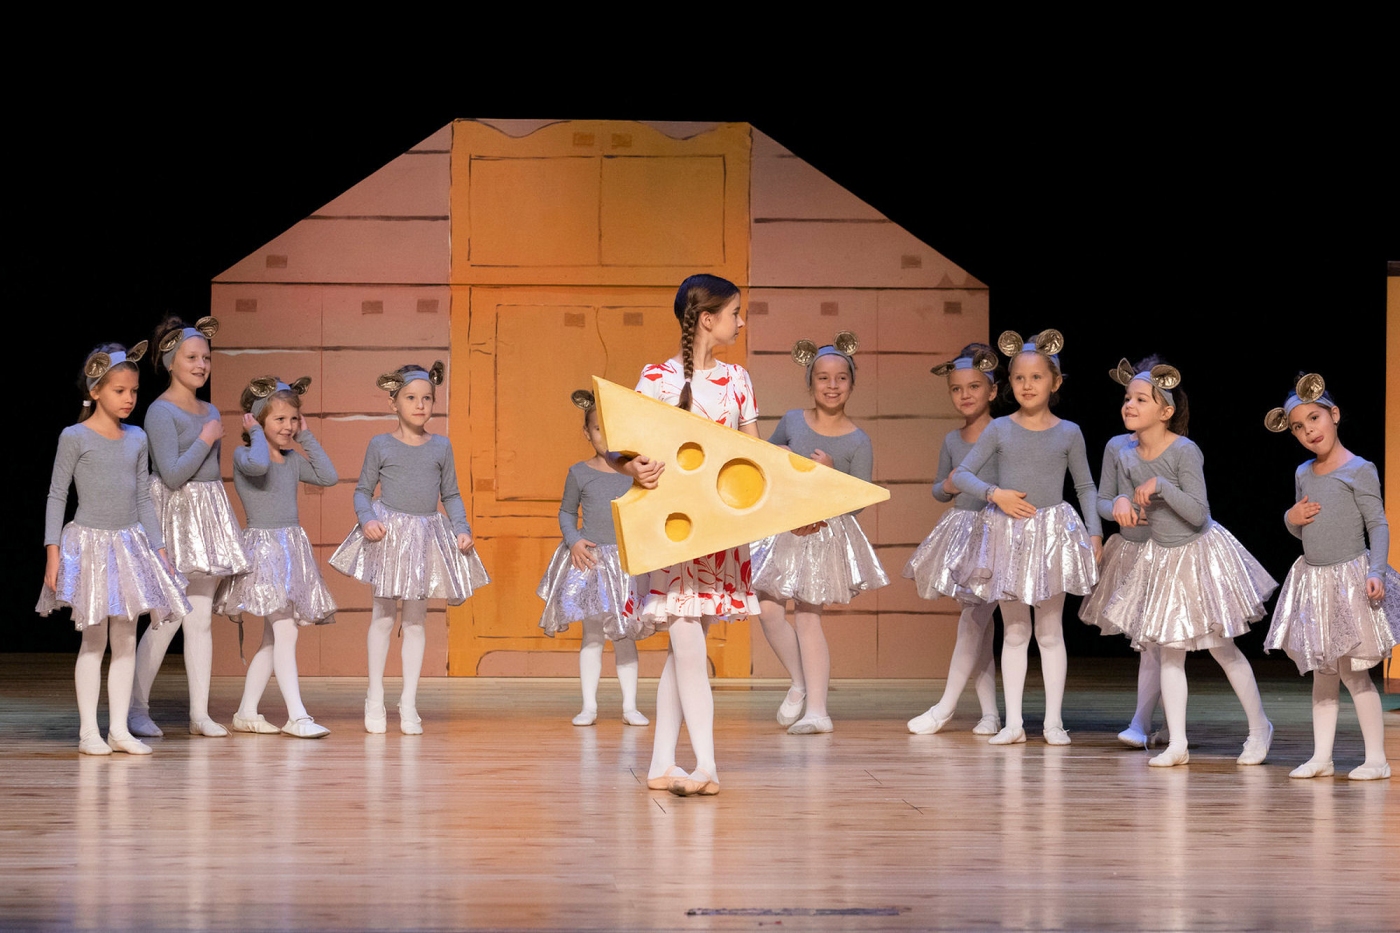 Na scenie w głównym miejscu dziewczynka trzyma ogromny kawał sera za nią duża ilość innych dziewczynek przebranych za myszy